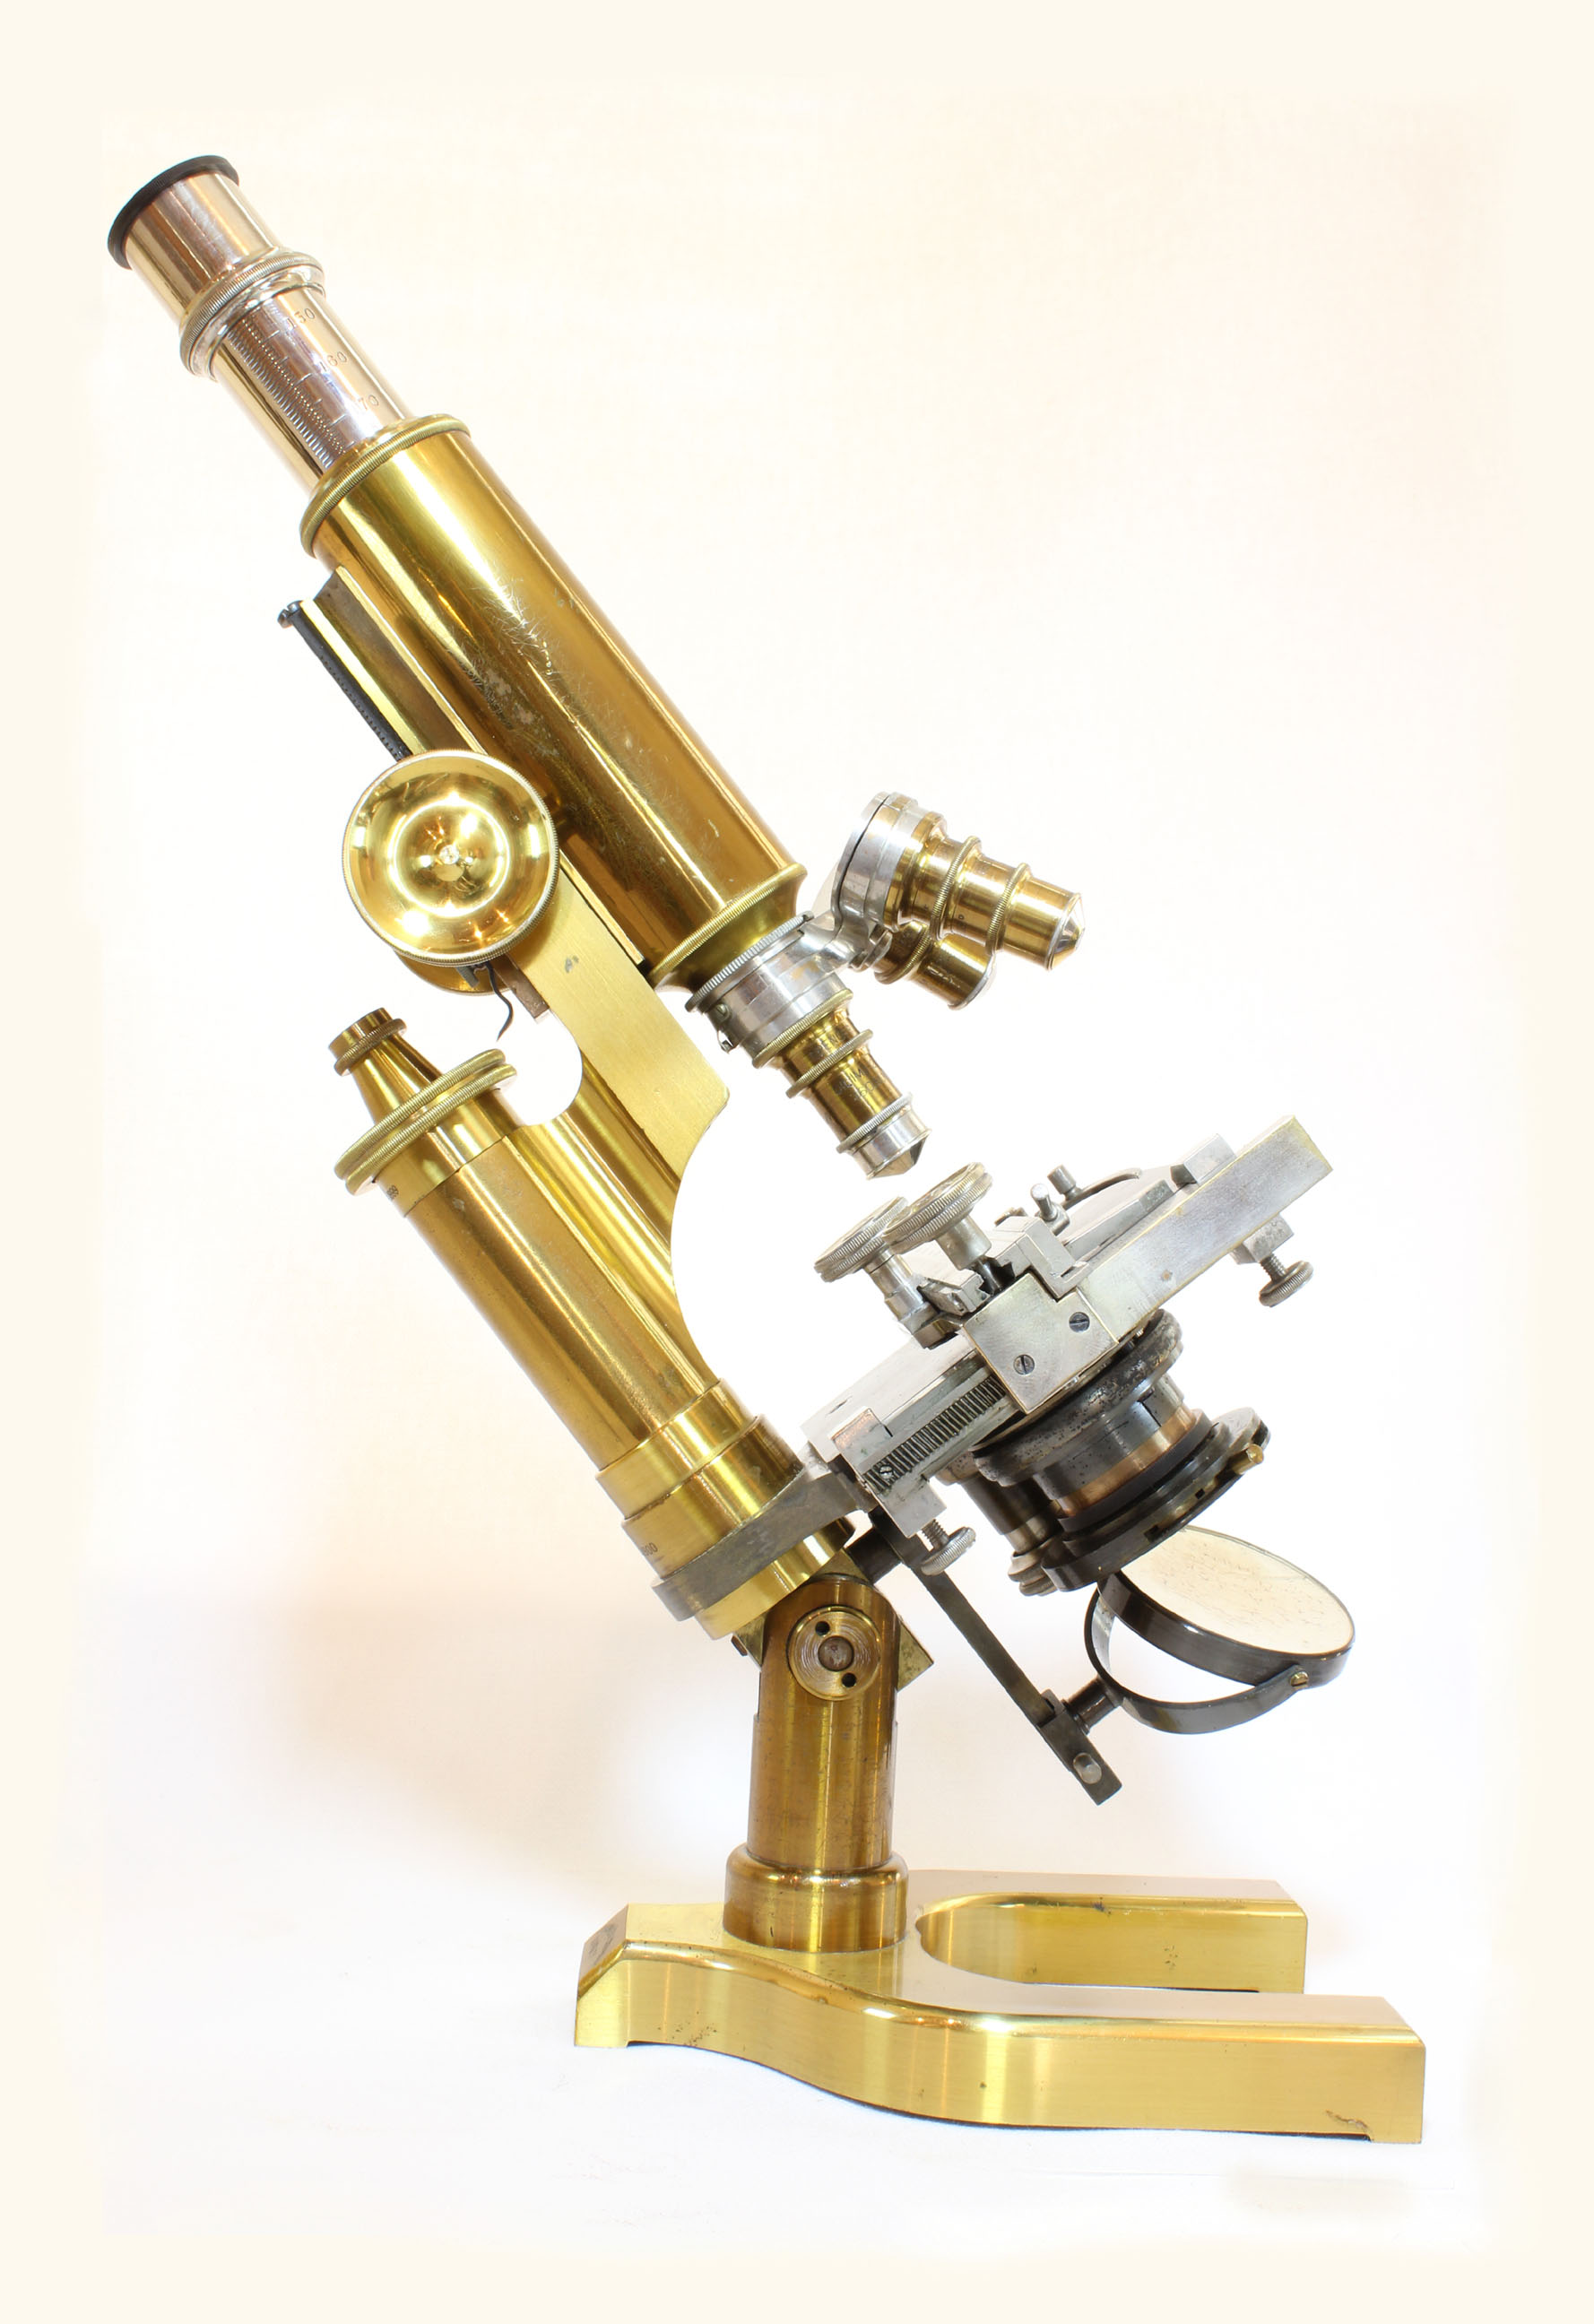 Spencer No 1 Microscope